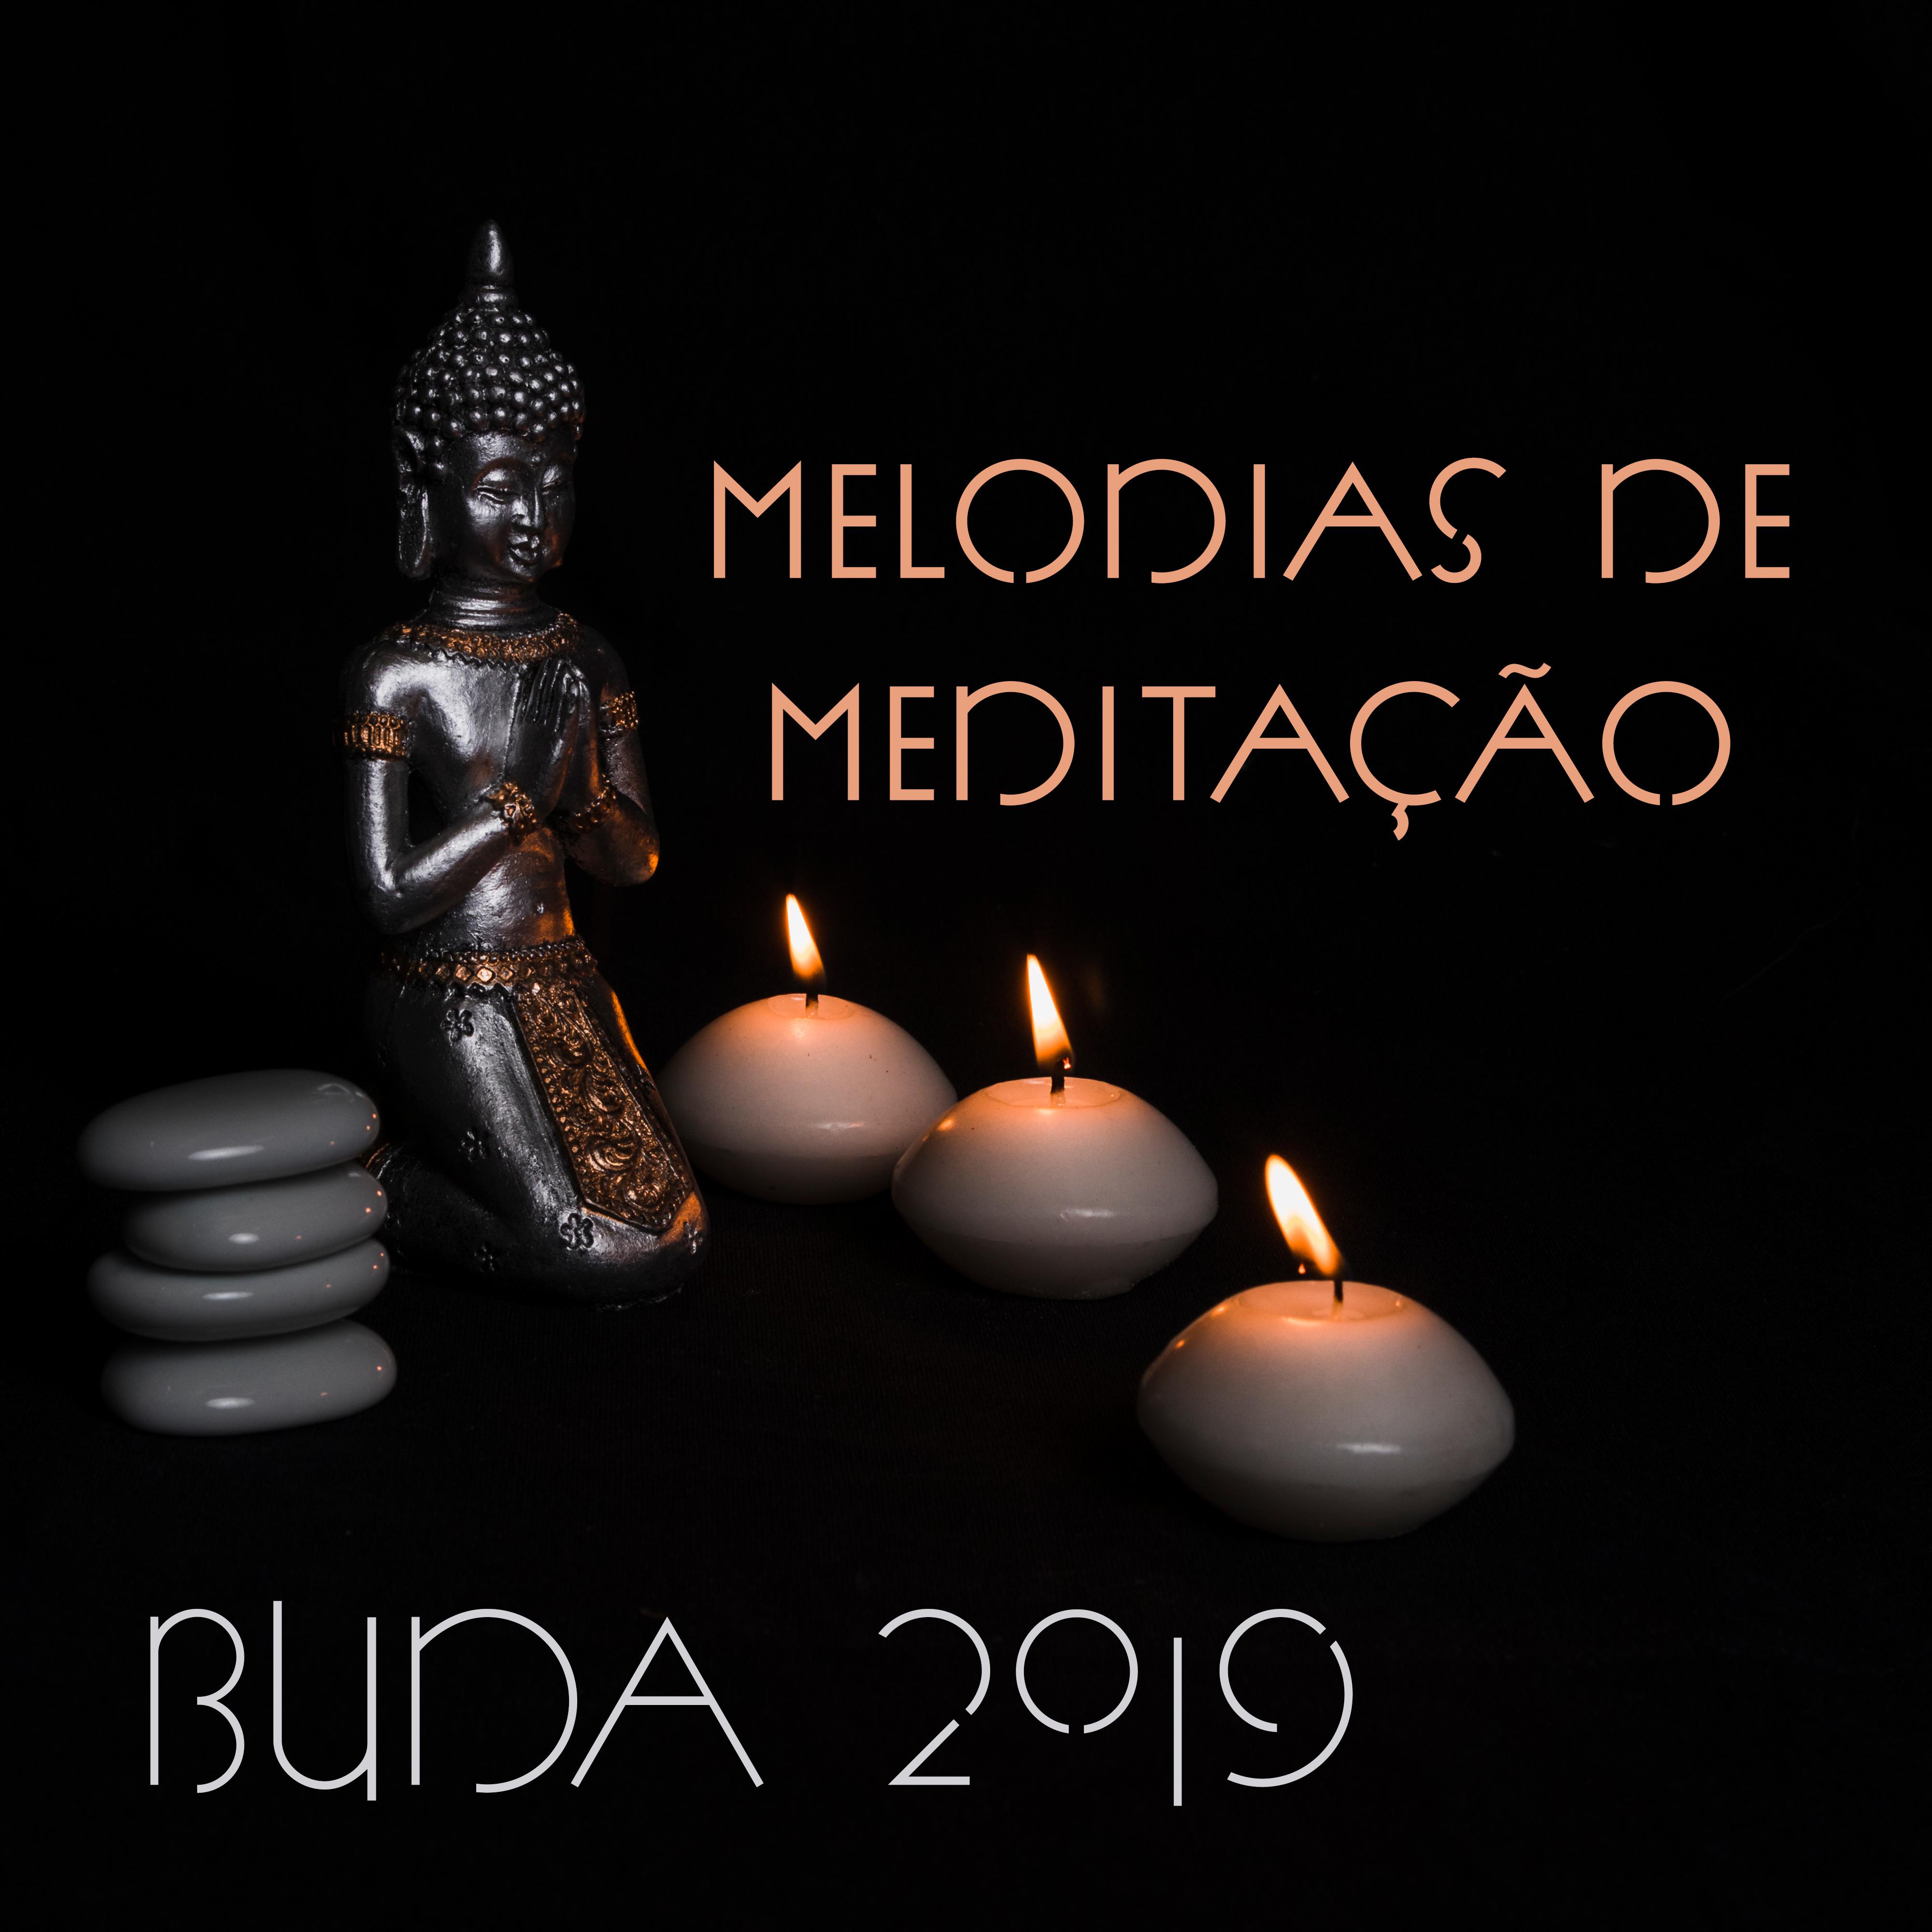 Melodias de Medita o Buda 2019